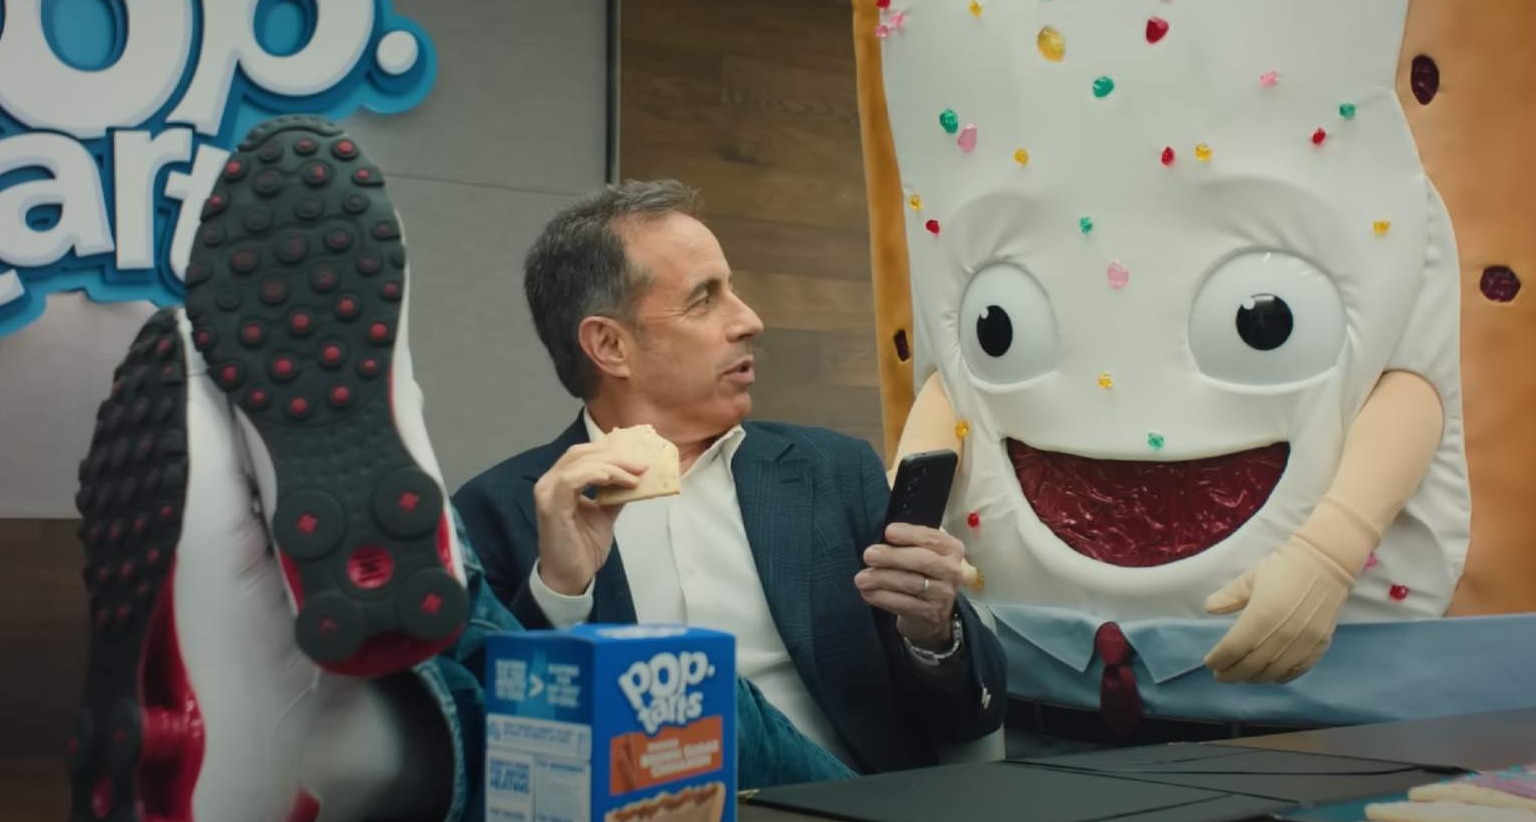 El actor Jerry Seinfield en un anuncio de Pop-Tarts